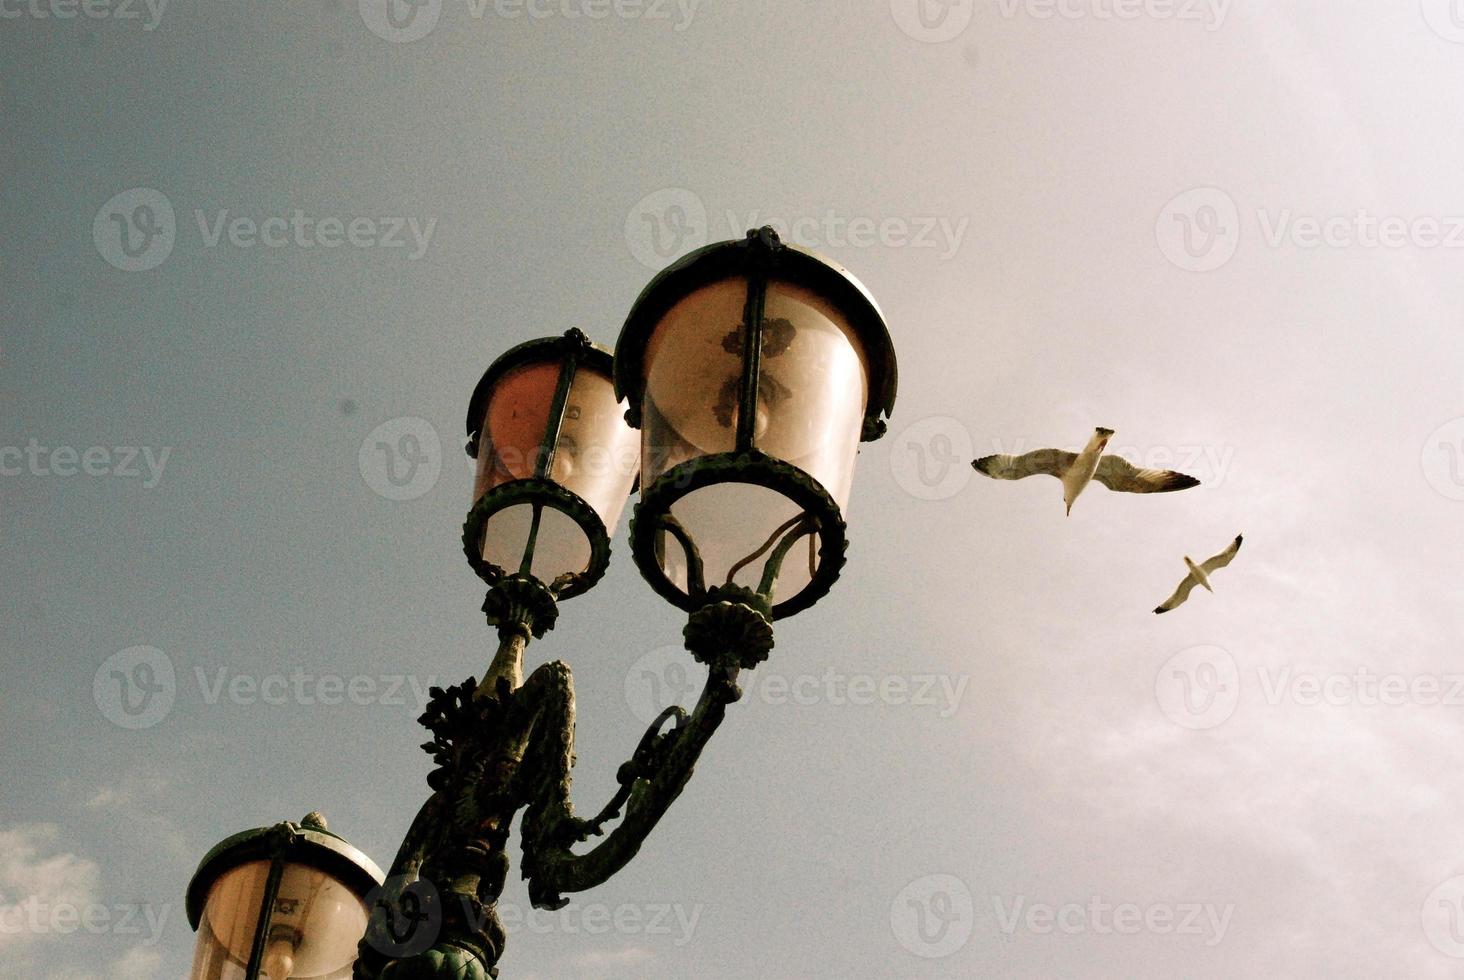 gaivotas por poste de luz foto